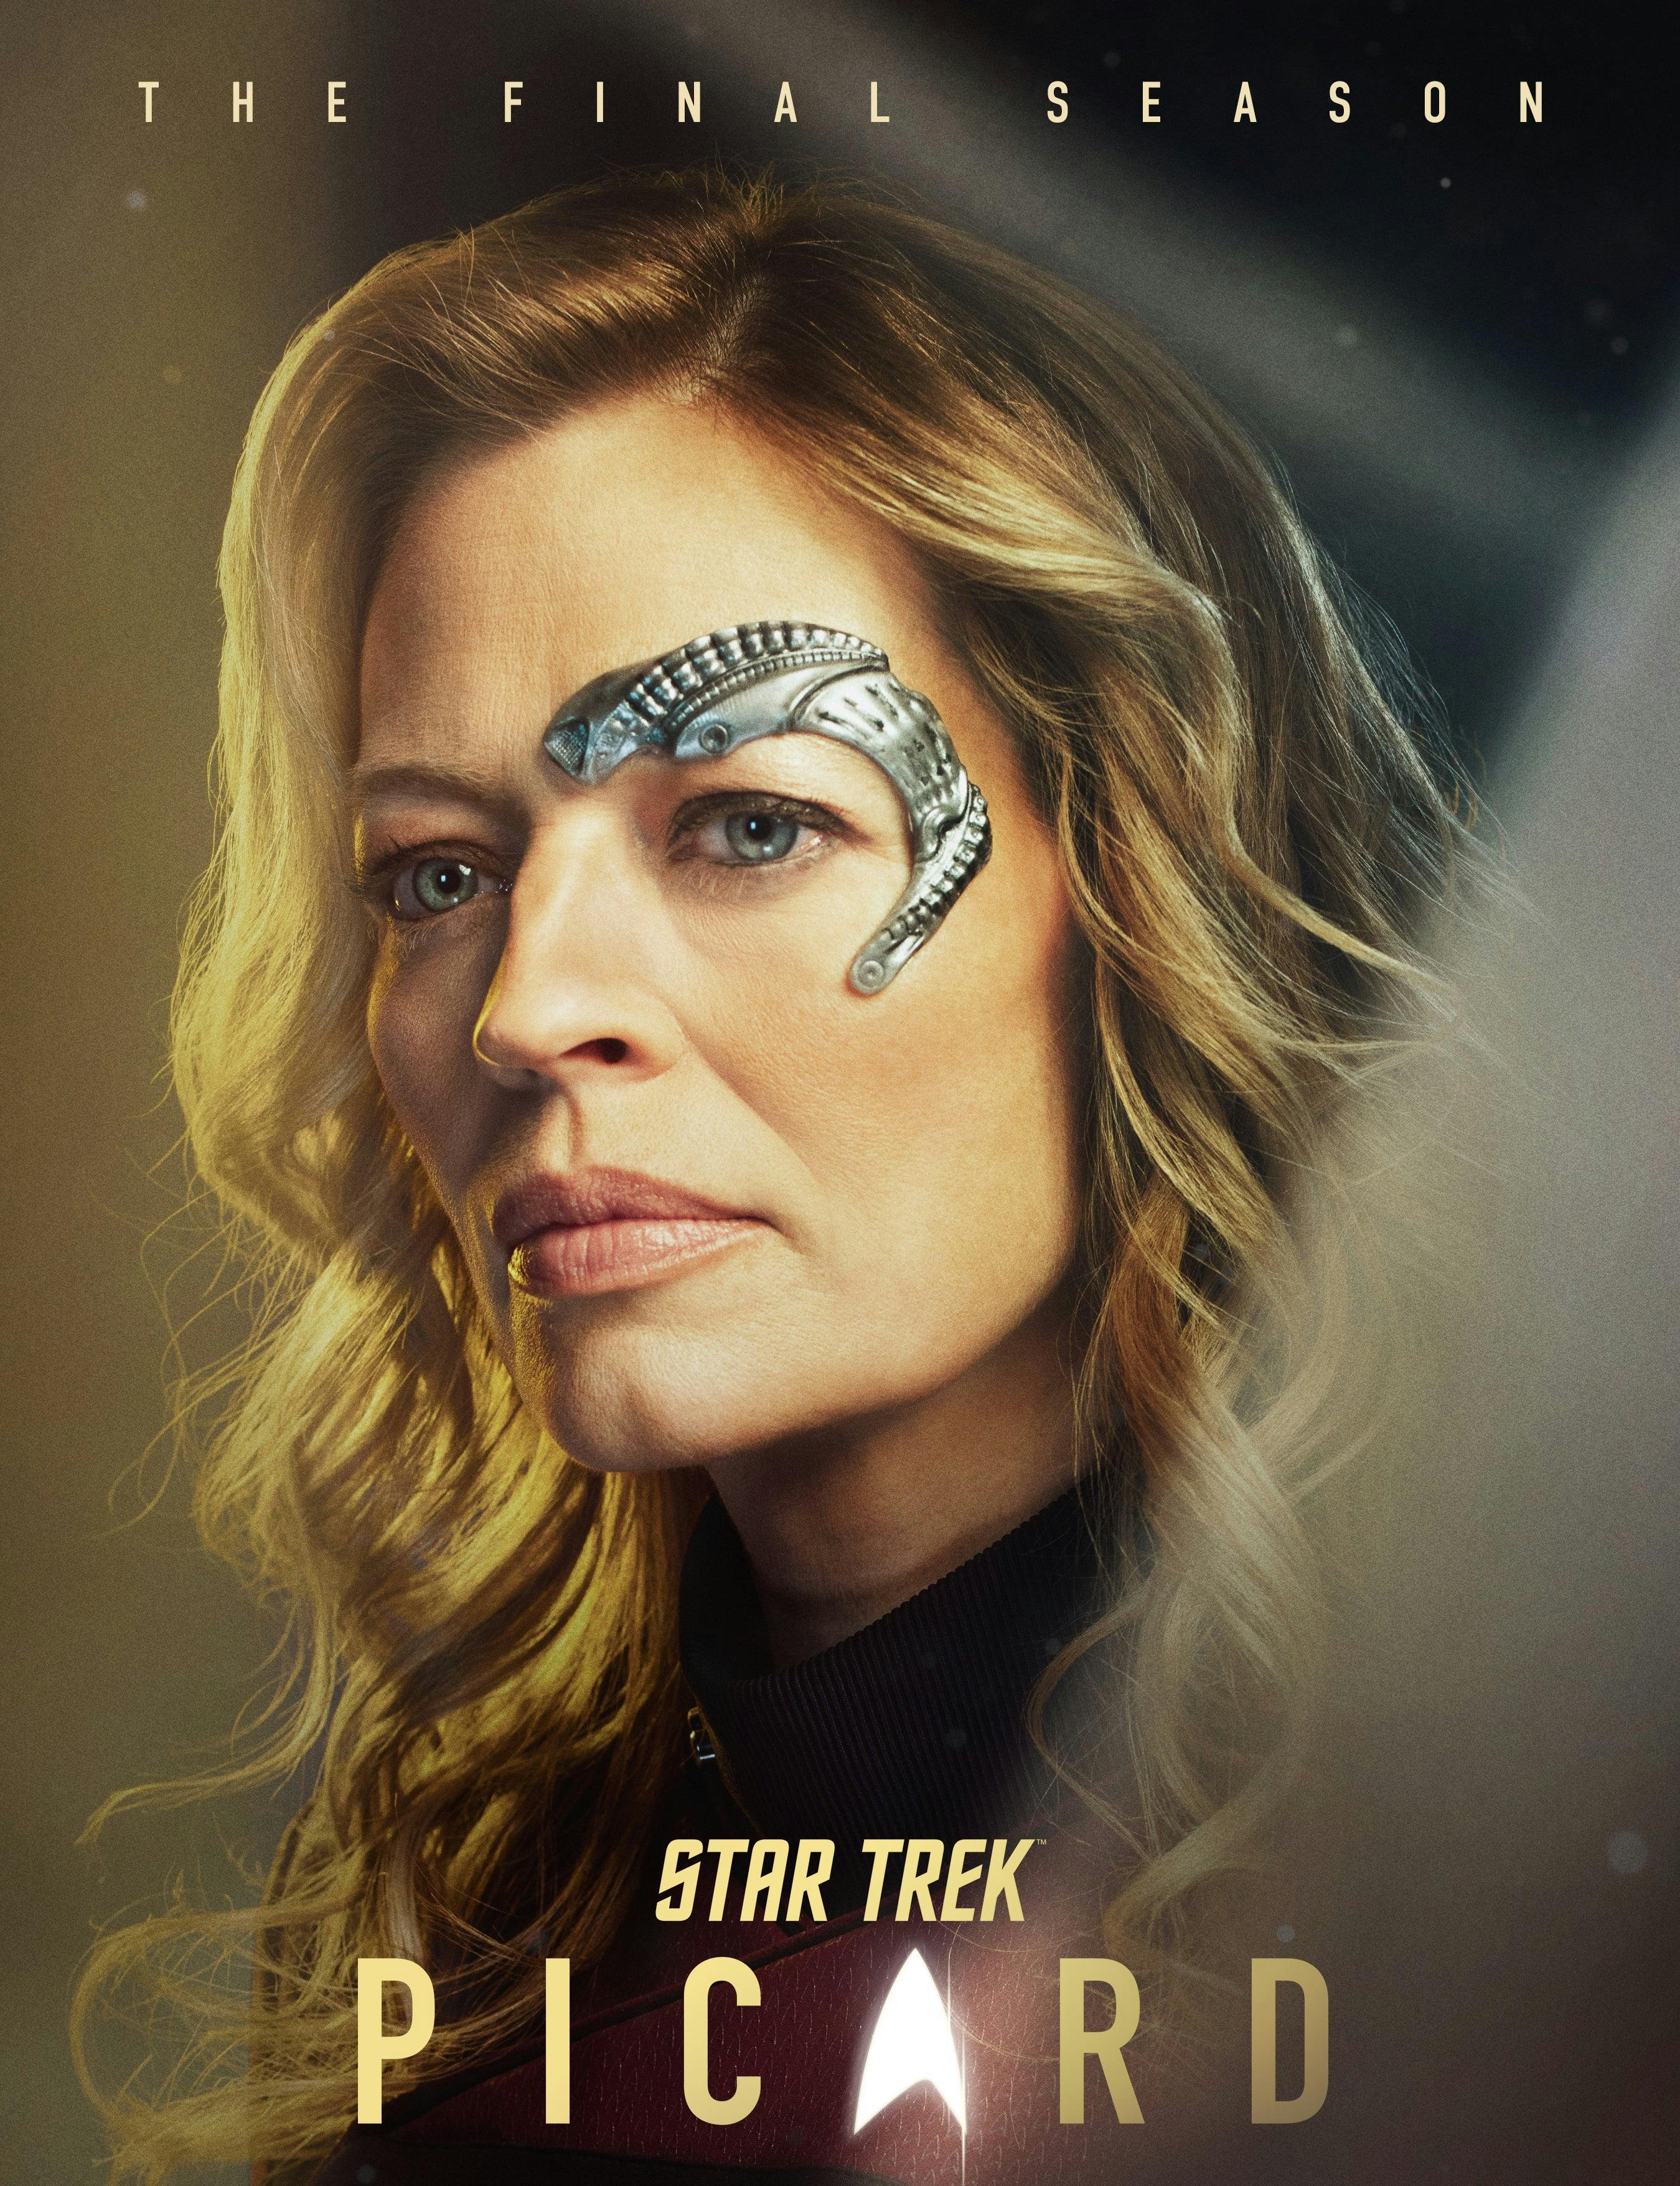 Star Trek: Picard Season 3 Key Art Character Poster of Seven of Nine